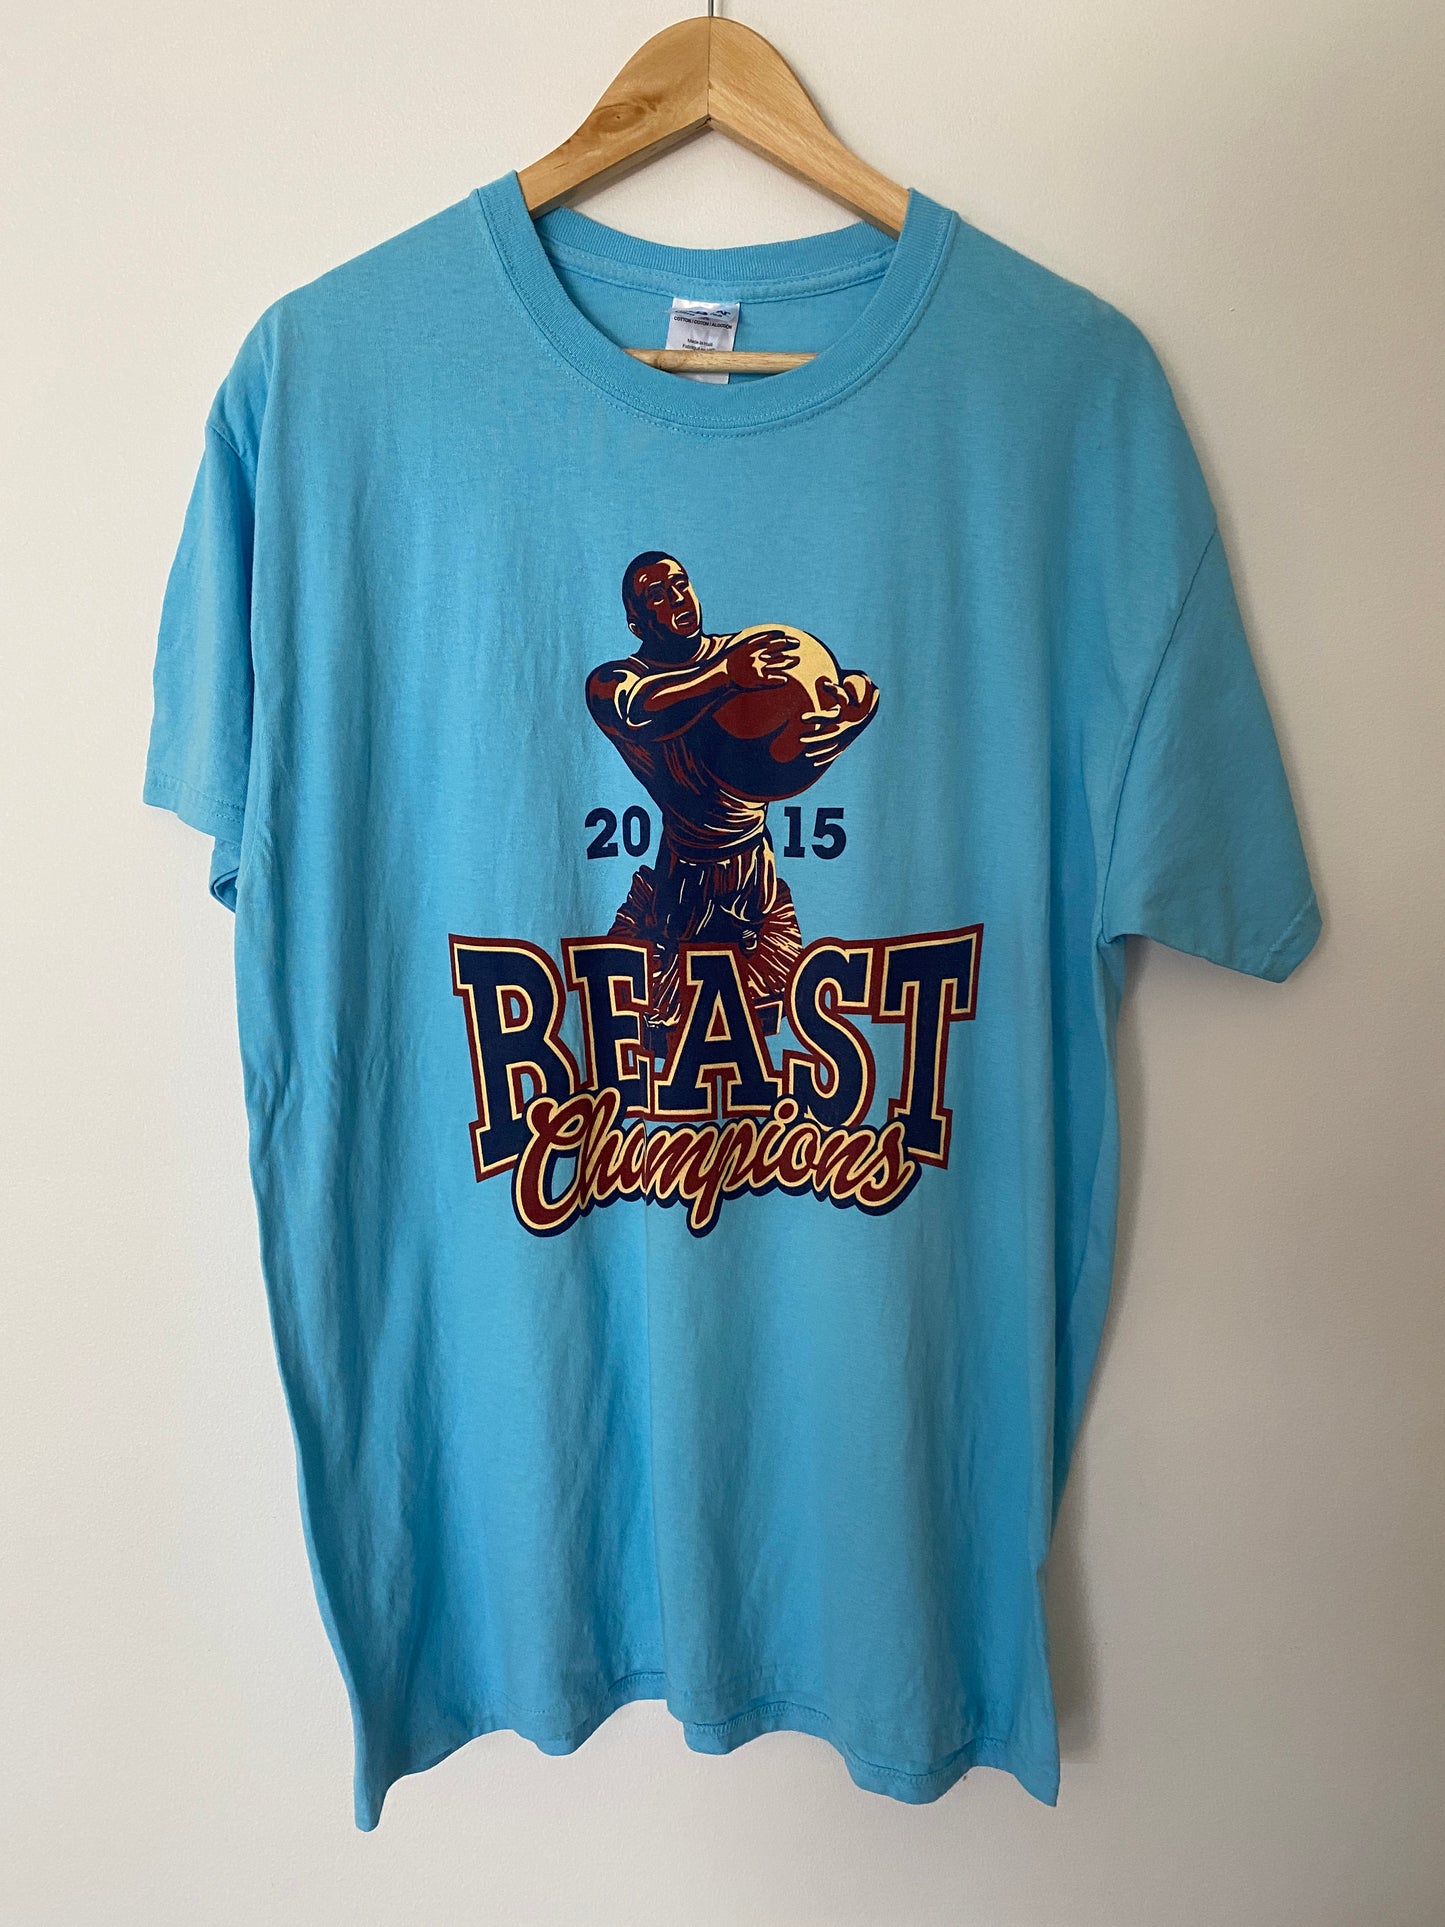 2015 Beast Champions T-Shirt - L